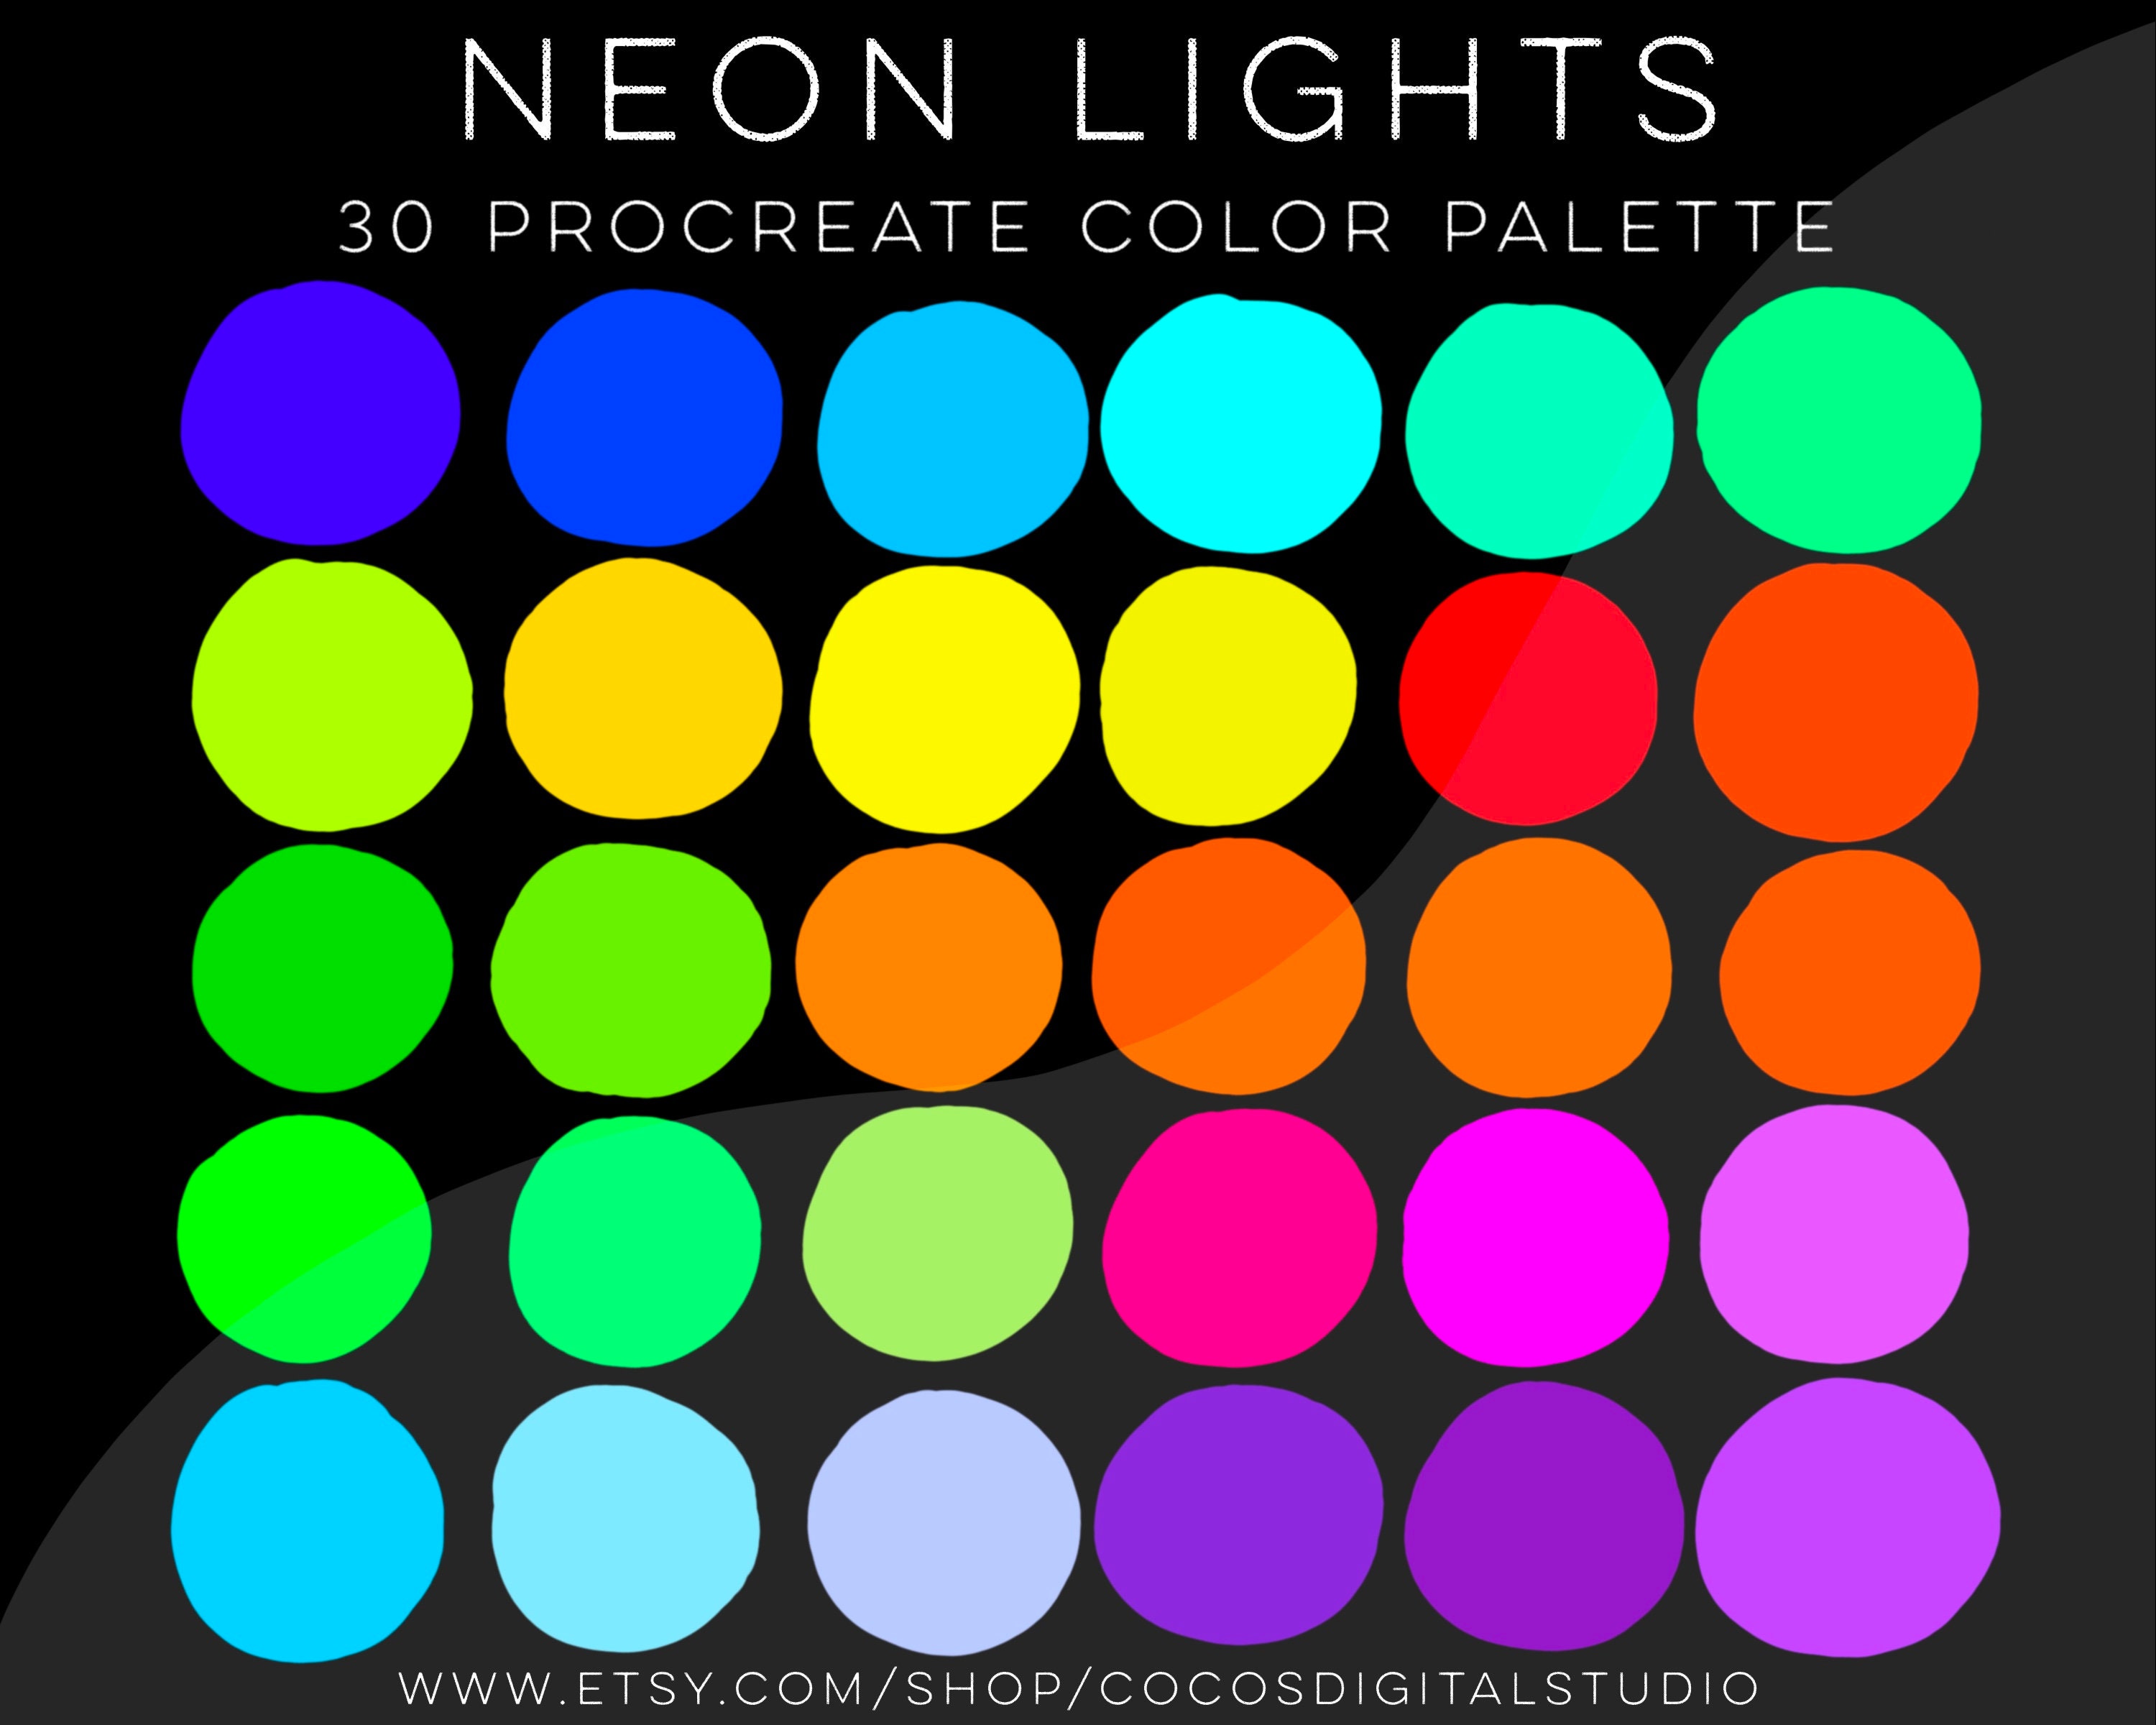 Neon Colors фото в формате jpeg, классные фотки в супер разрешении